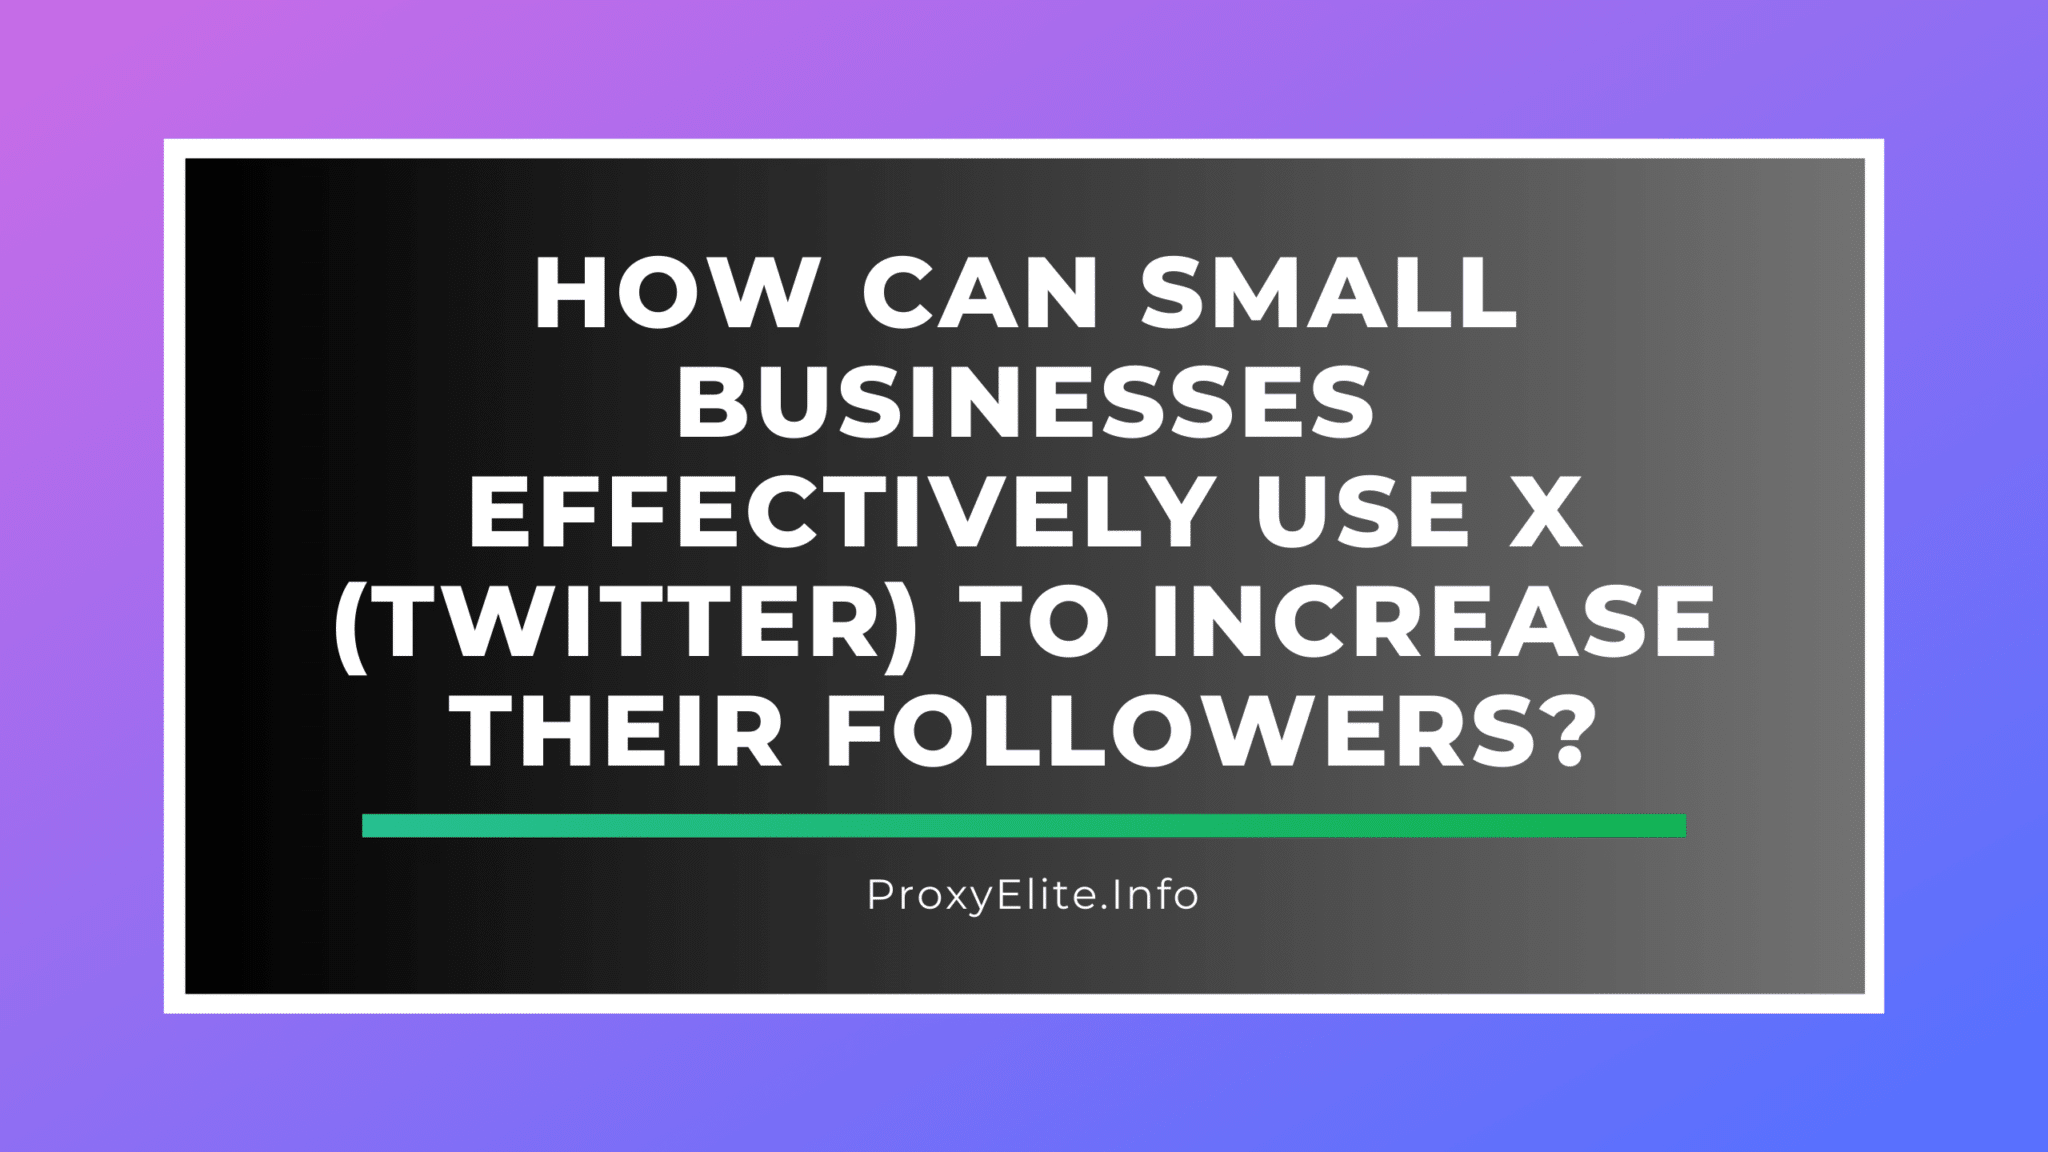 ¿Cómo pueden las pequeñas empresas utilizar X (Twitter) de forma eficaz para aumentar sus seguidores?